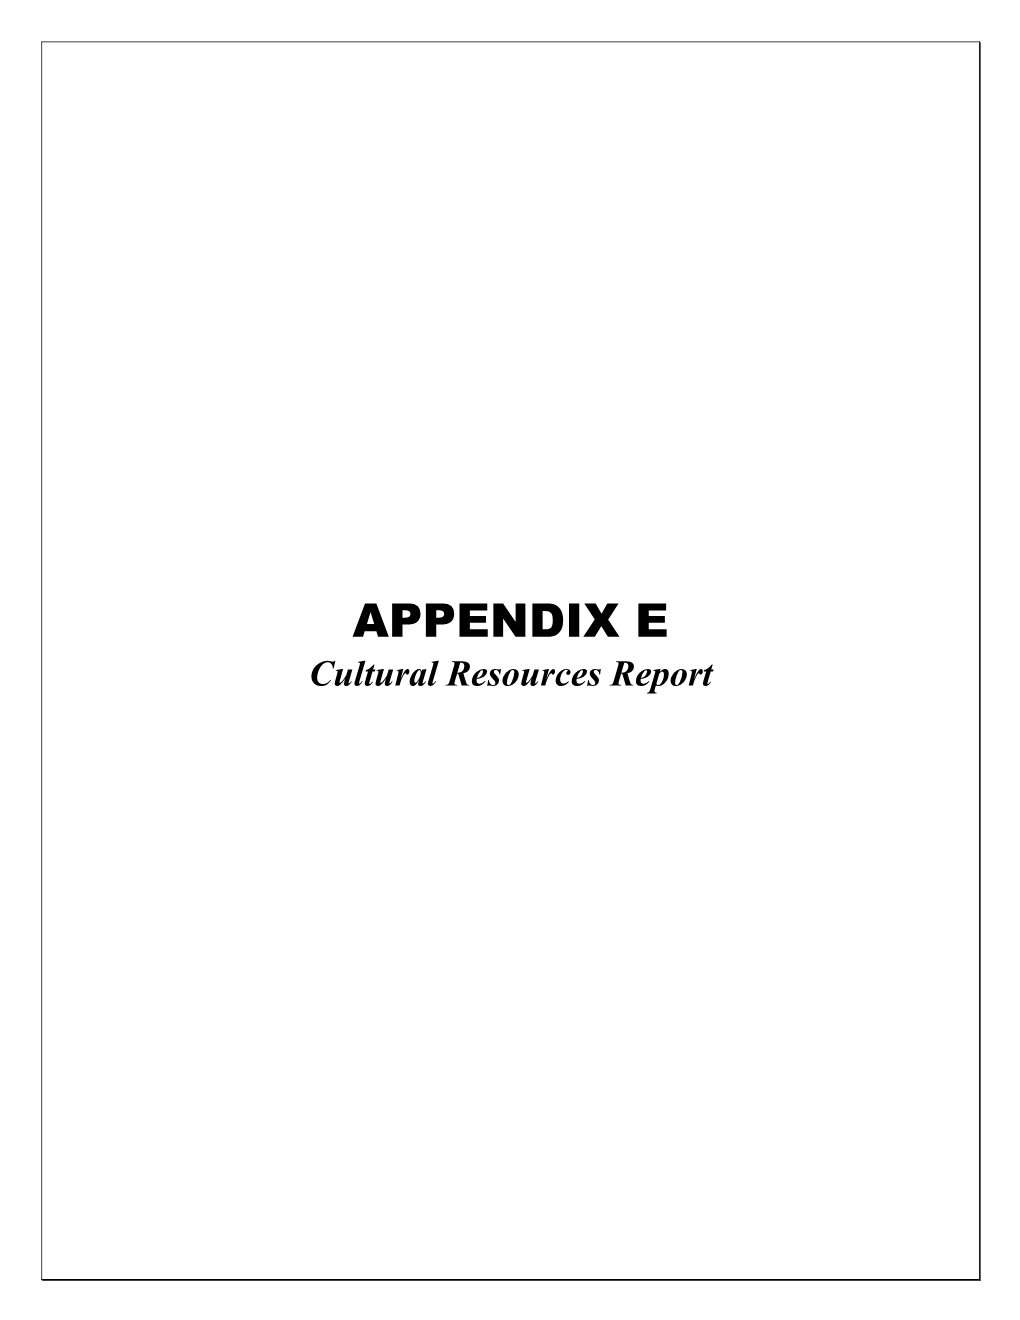 APPENDIX E Cultural Resources Report